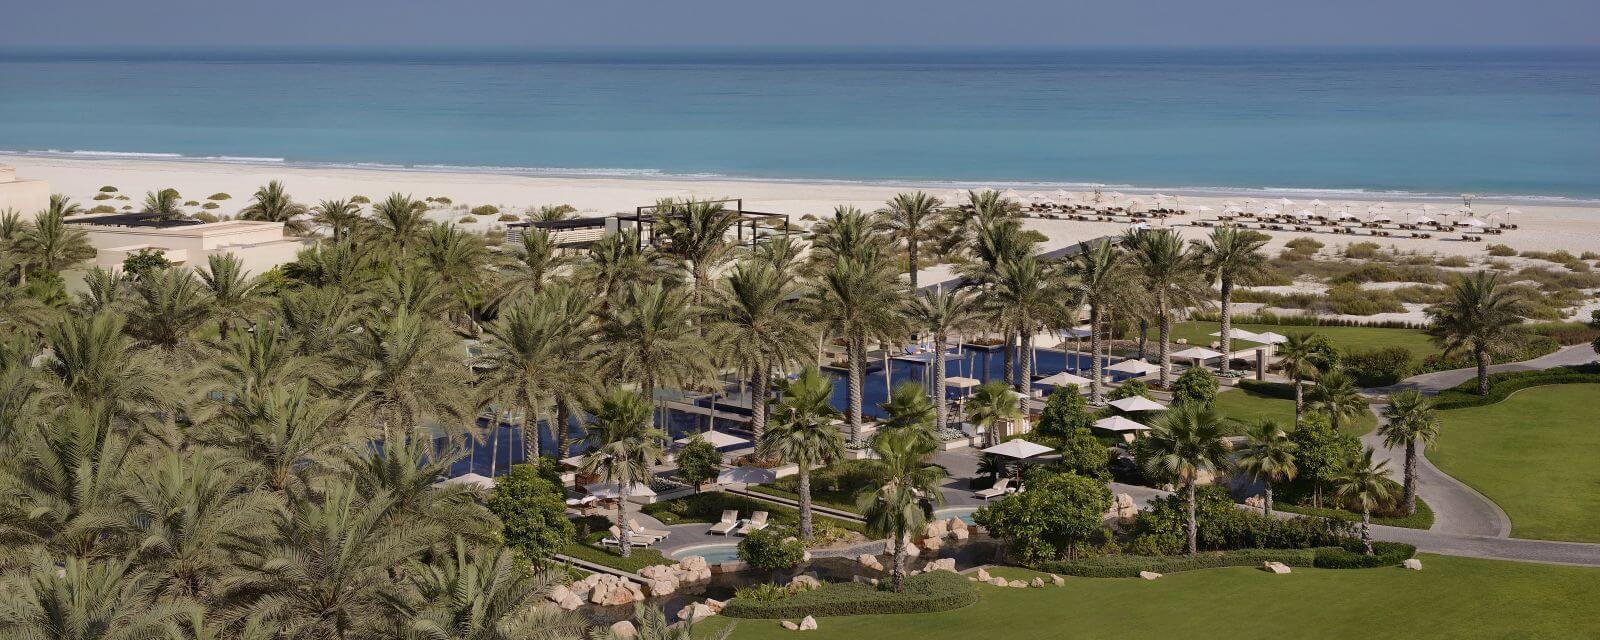 Park Hyatt Abu Dhabi Hotel Villas Slider2